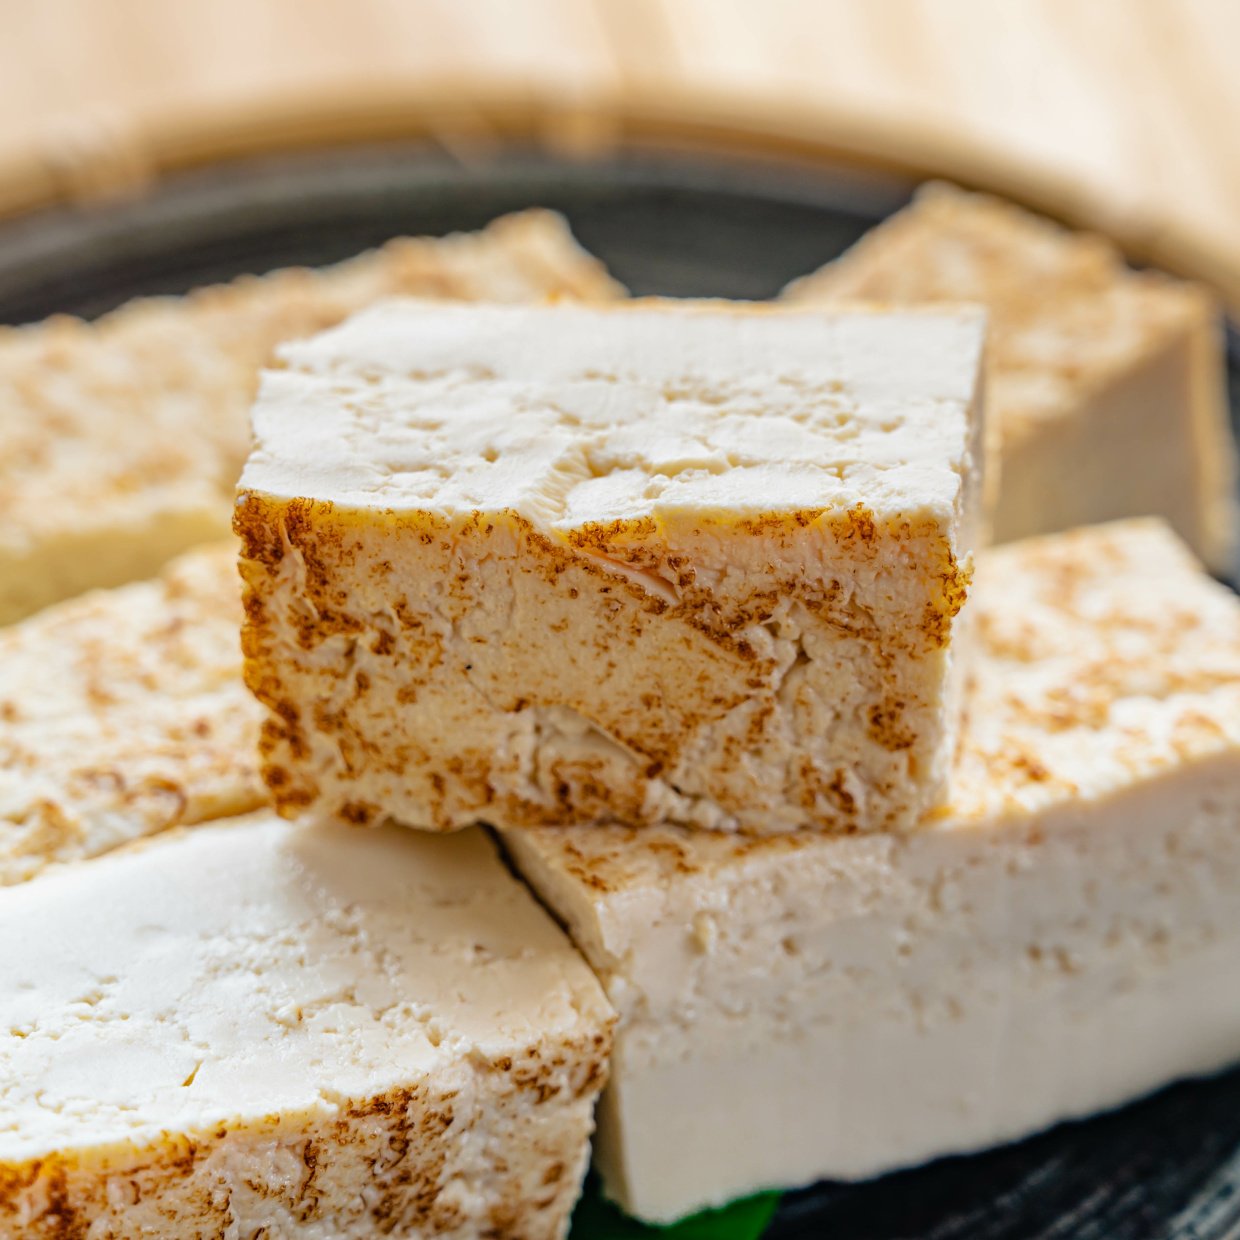  「豆腐」と一緒に食べると“鉄やカルシウム不足に効果的な”食材とは【健康レシピ】 